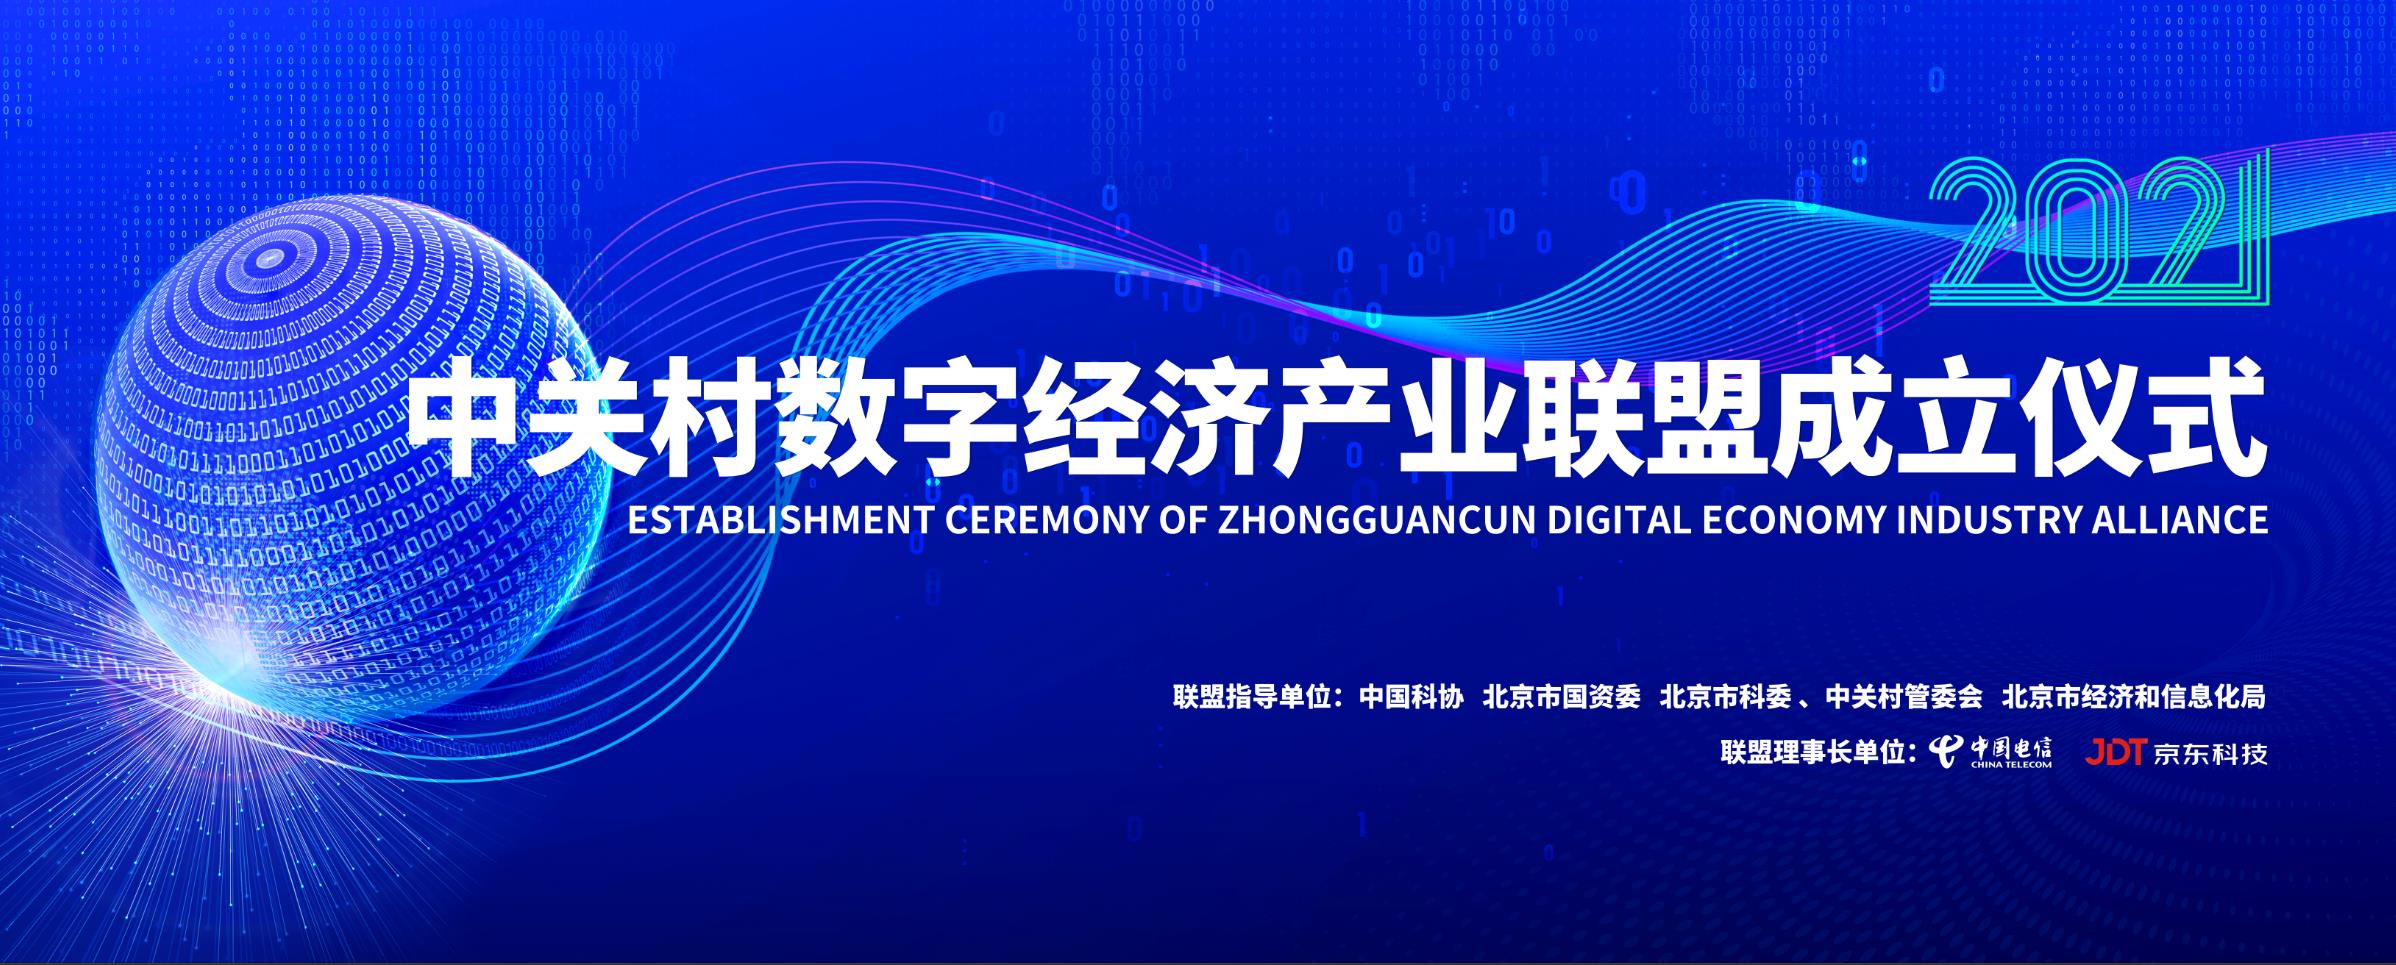 中关村数字经济产业联盟成立大会在京举行